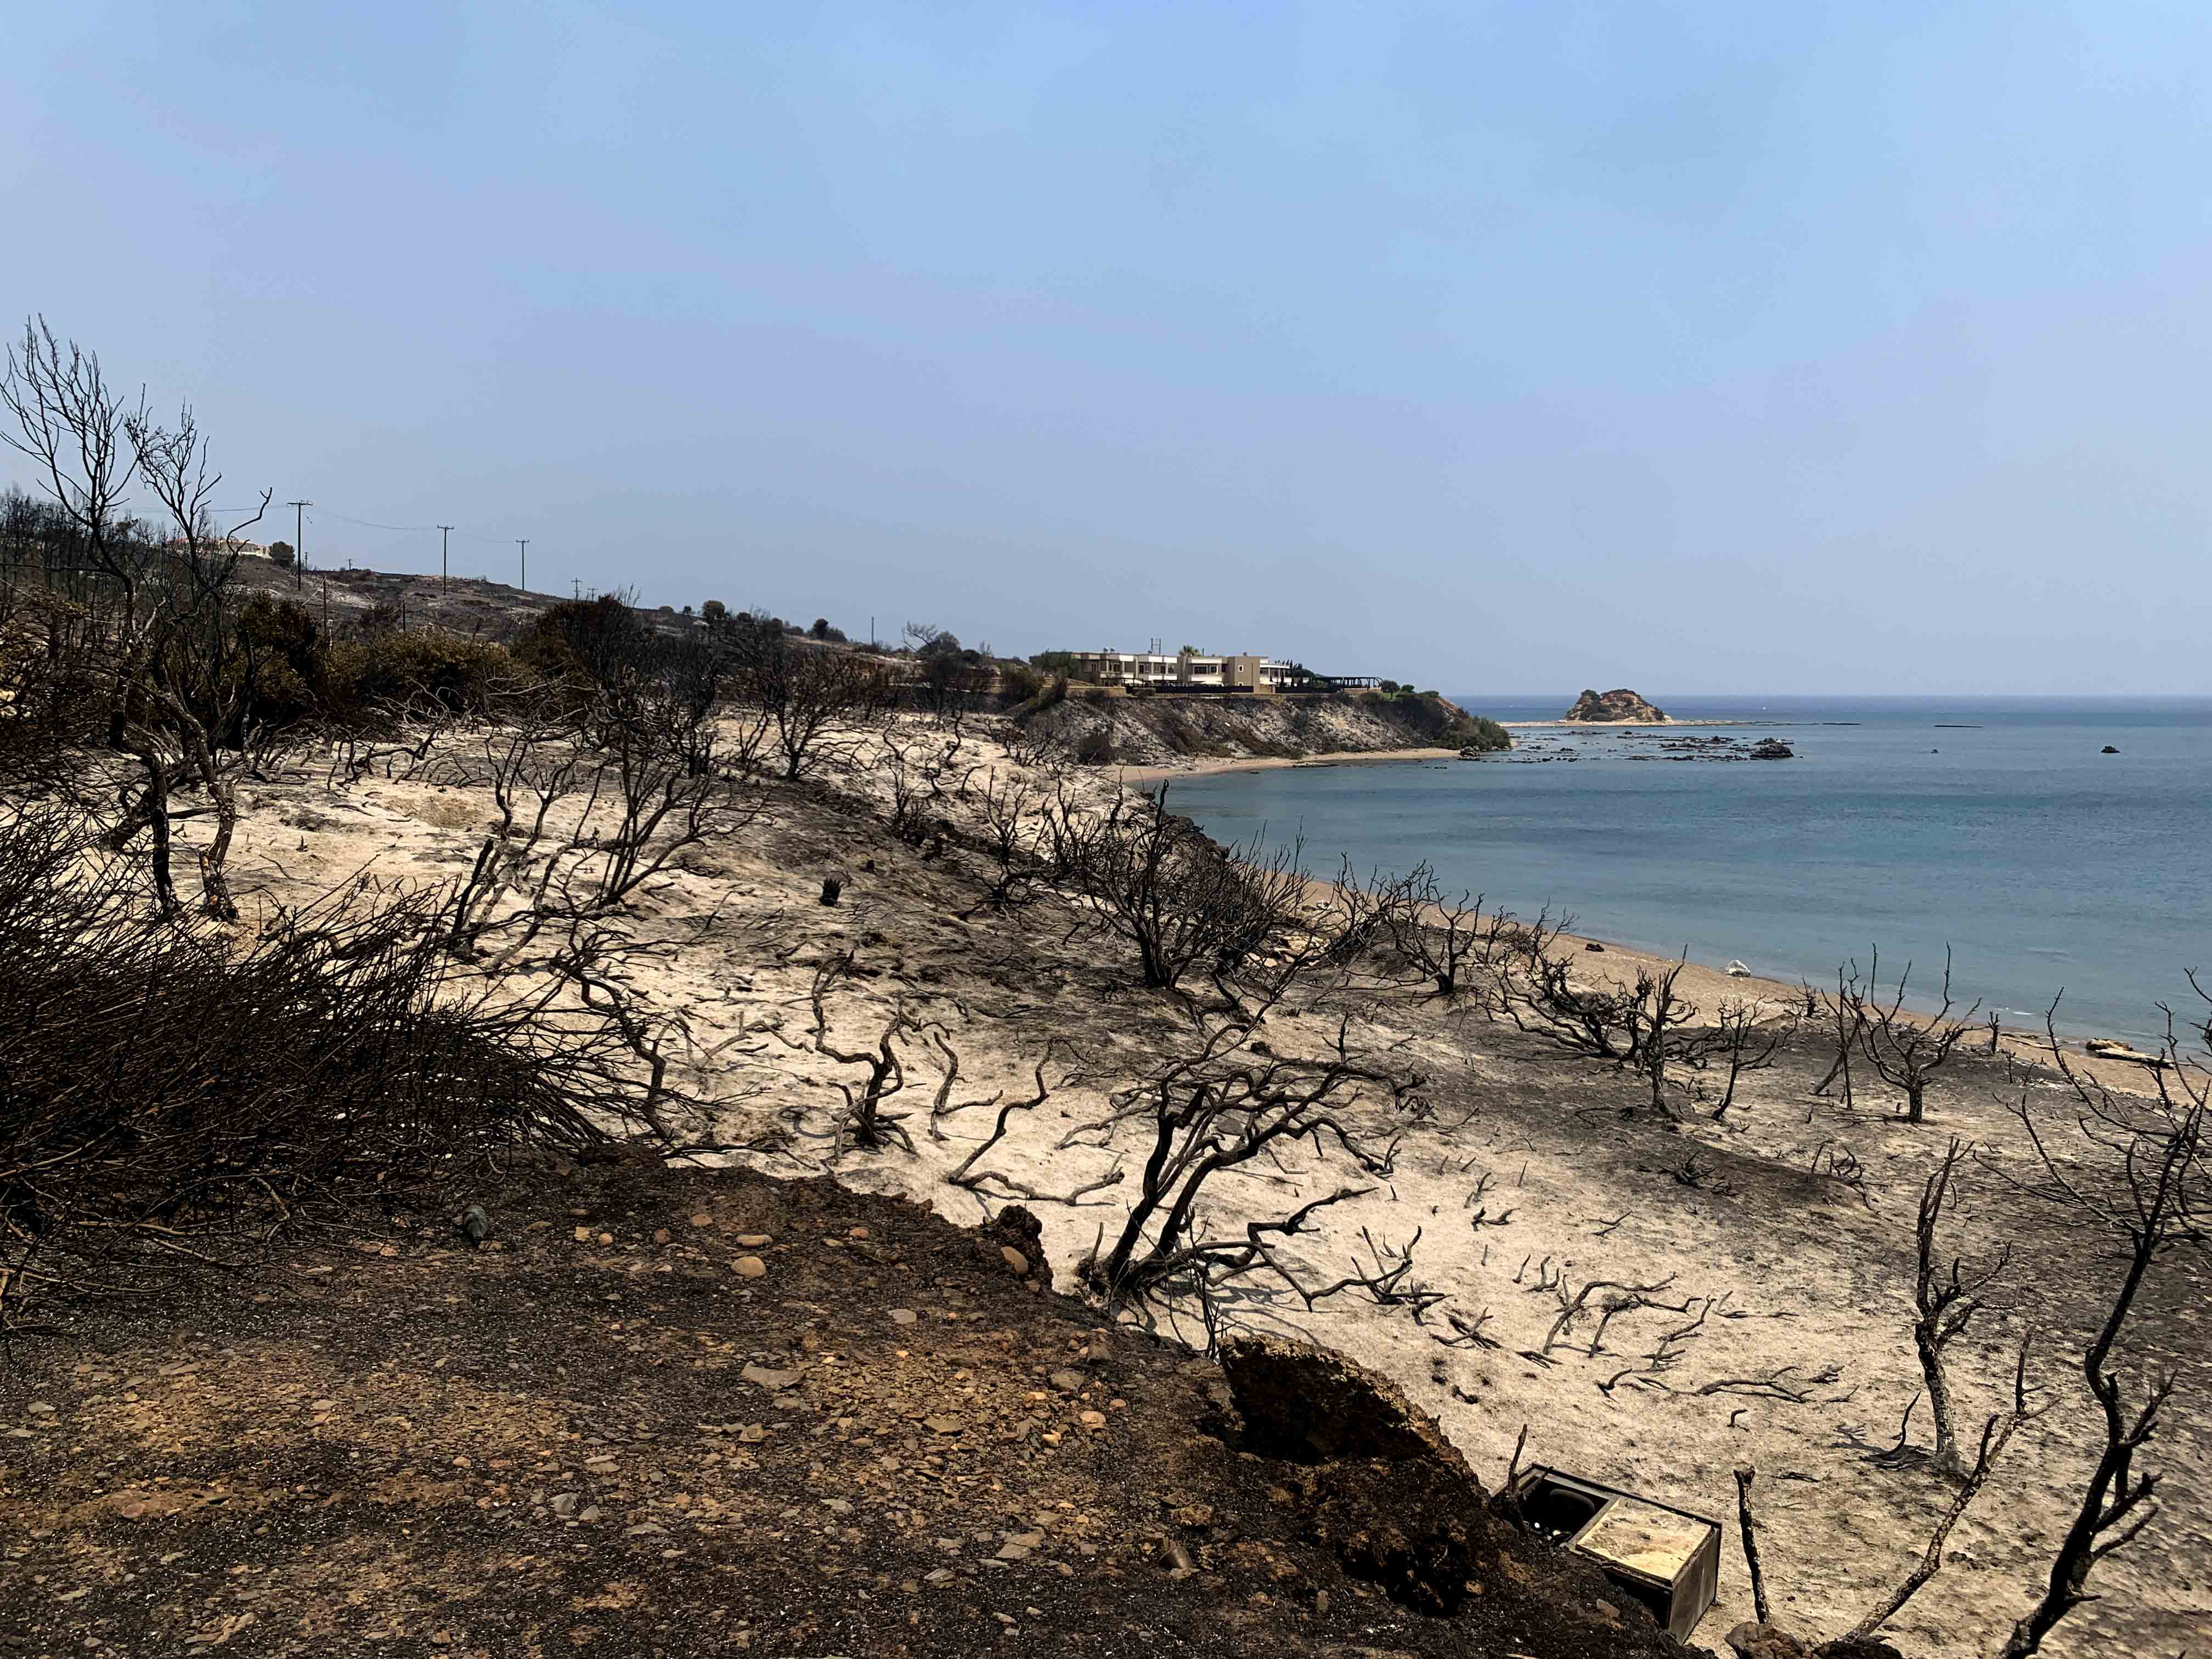 Аномальная жара в Греции: эвакуация тысяч туристов с острова Родос и новые пожары на Корфу